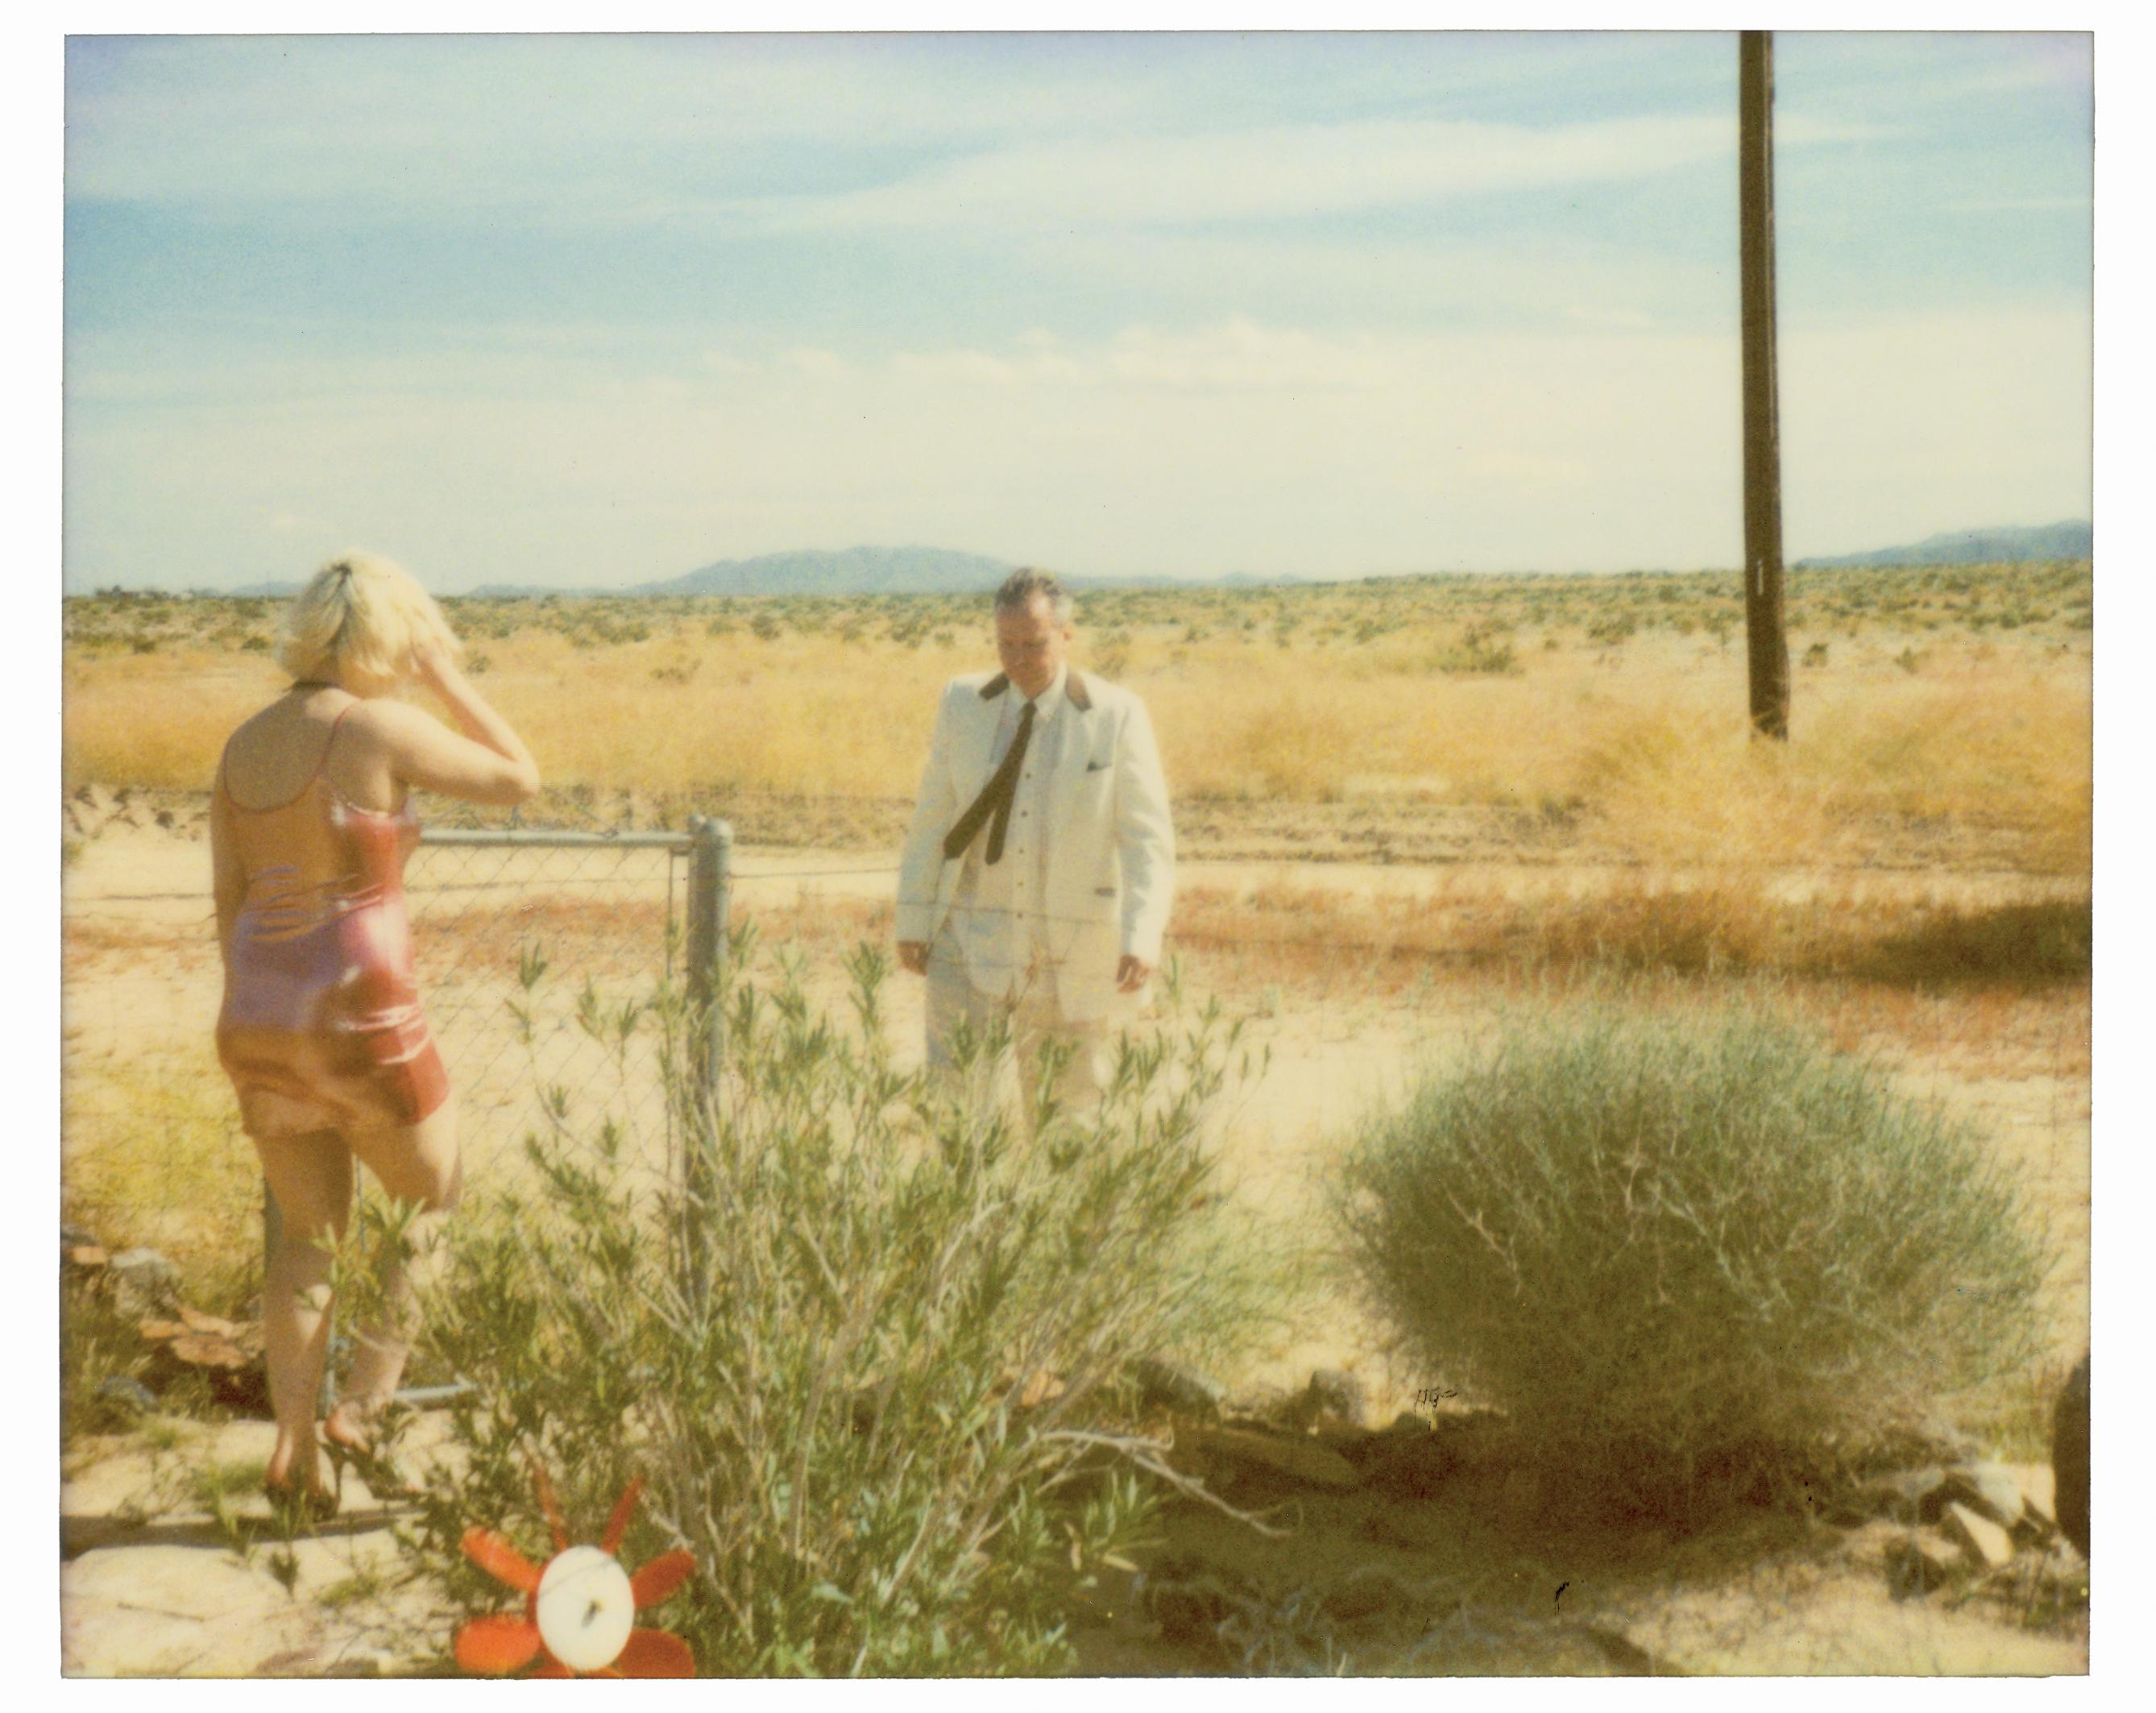 Stefanie Schneider Landscape Photograph – Wonder Valley (29 Palms, CA) – analog, montiert, Installation, Musik, Video, Text